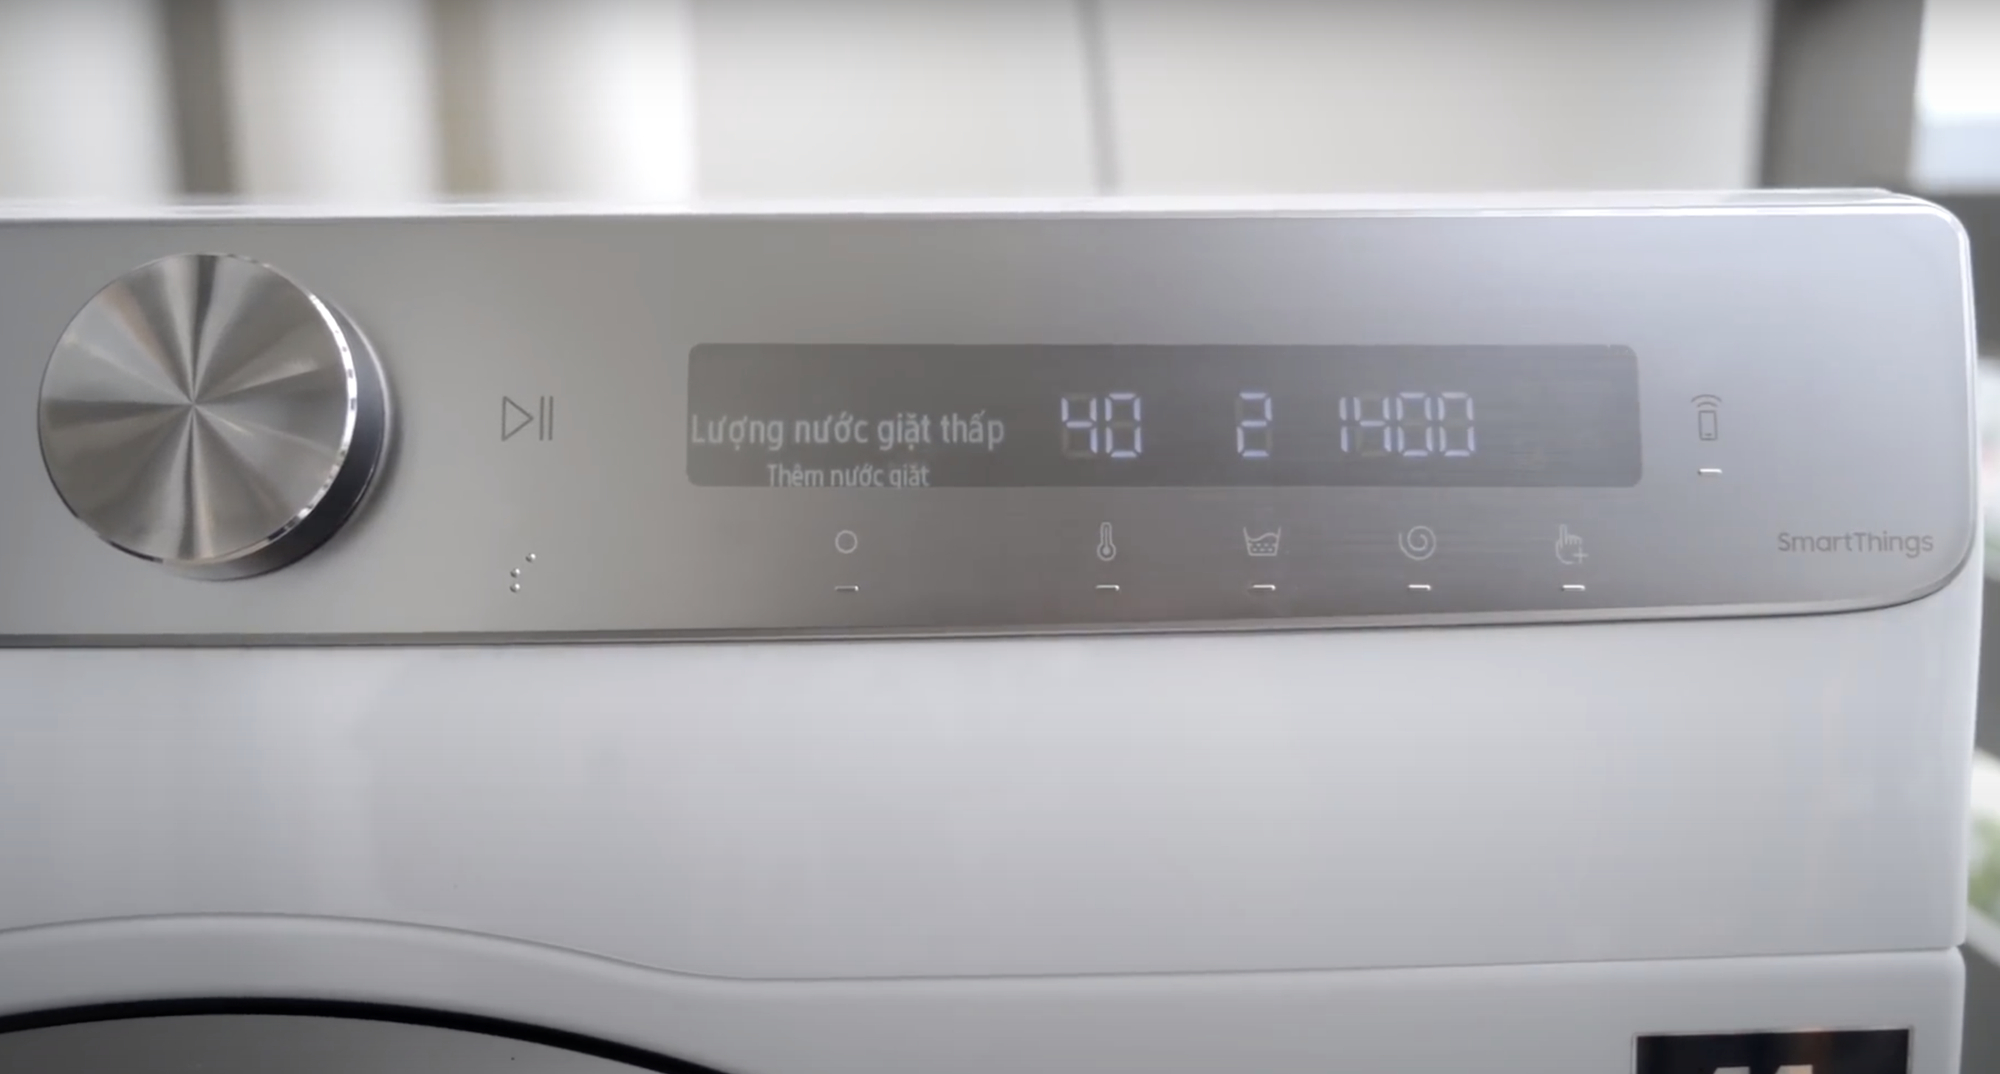 Đánh giá máy giặt Samsung AI EcoBubble: Sạch hơn, nhàn hơn - Ảnh 4.